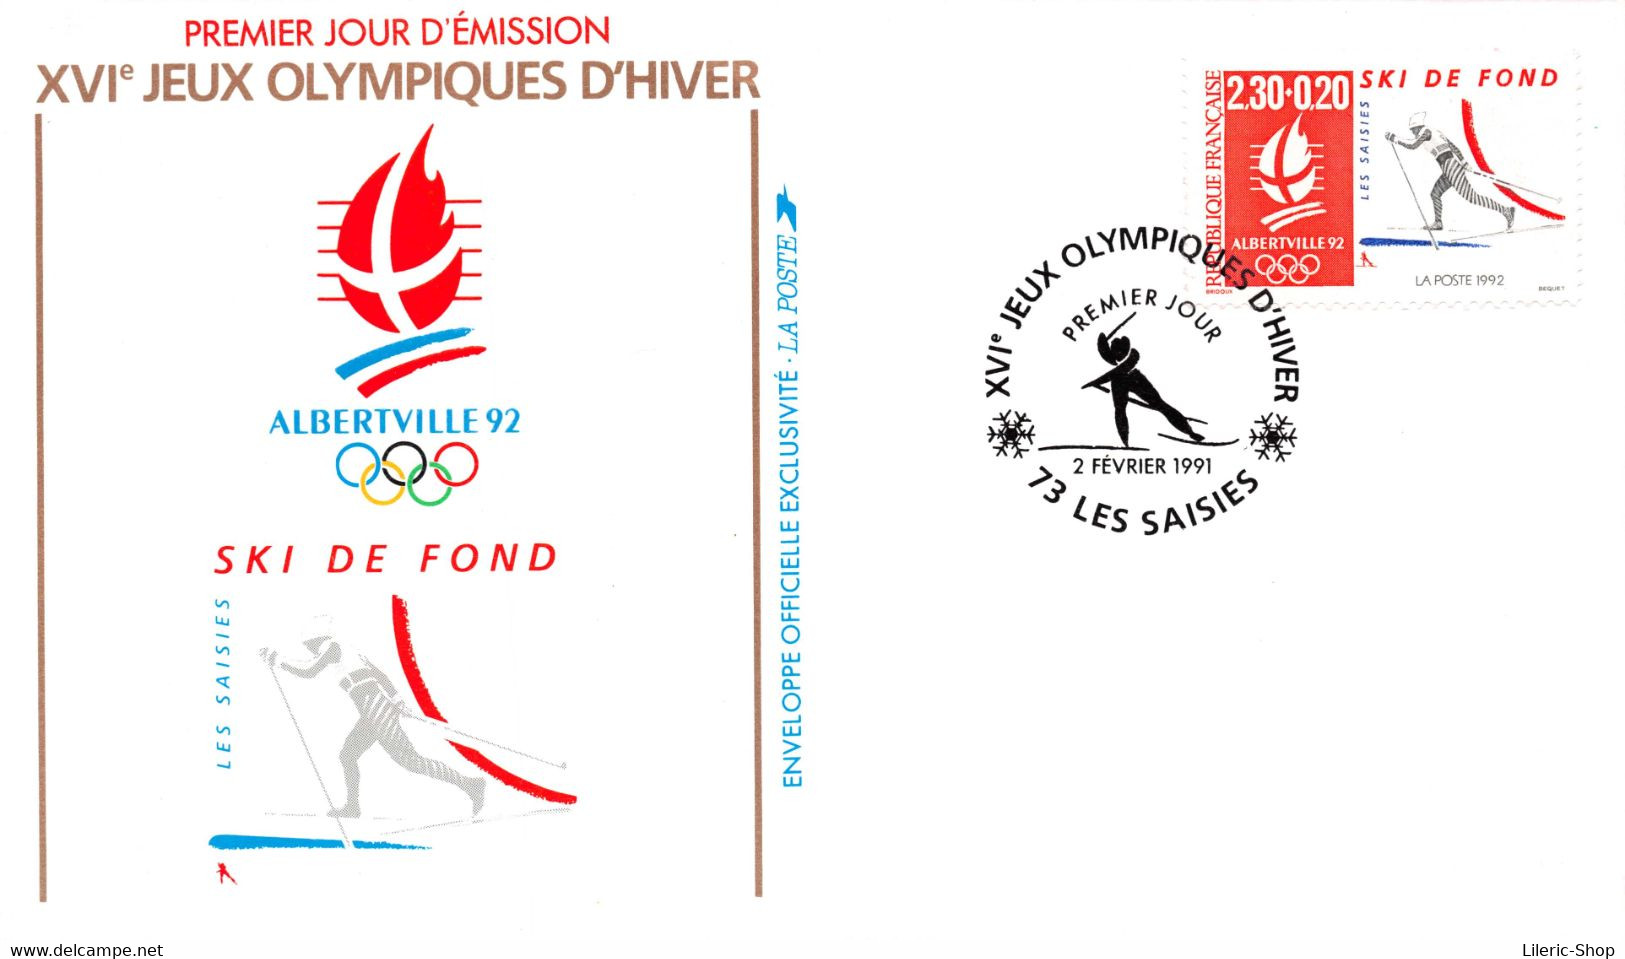 Premier jour d'émission - FDC - Alberville 1992 - Jeux Olympiques d'hiver - Lot de 10 enveloppes différentes -  ♥♥♥